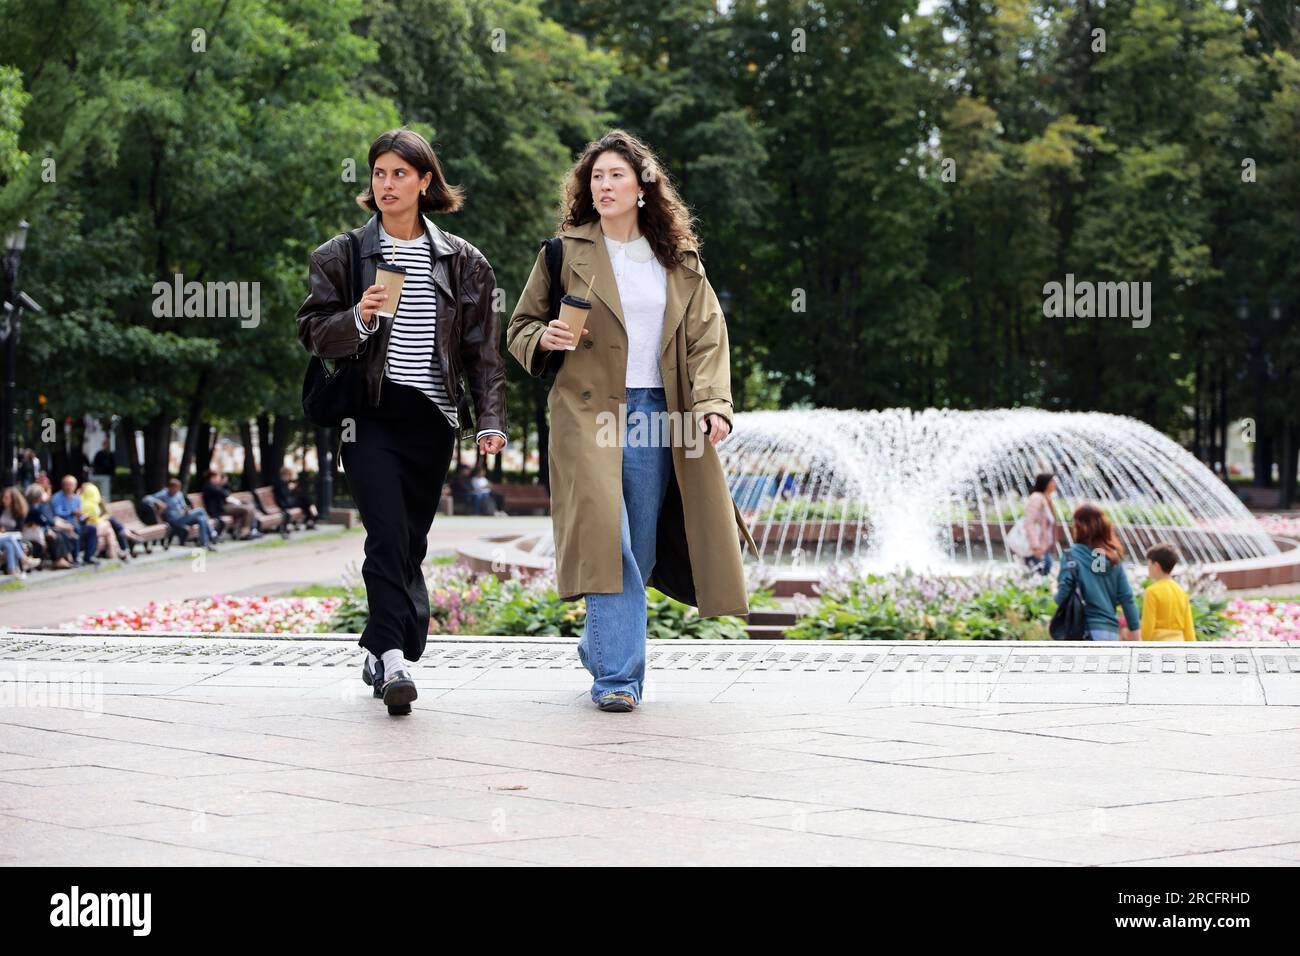 Zwei junge Frauen, die auf einer Straße spazieren gehen, mit Brunnen im Hintergrund Stockfoto